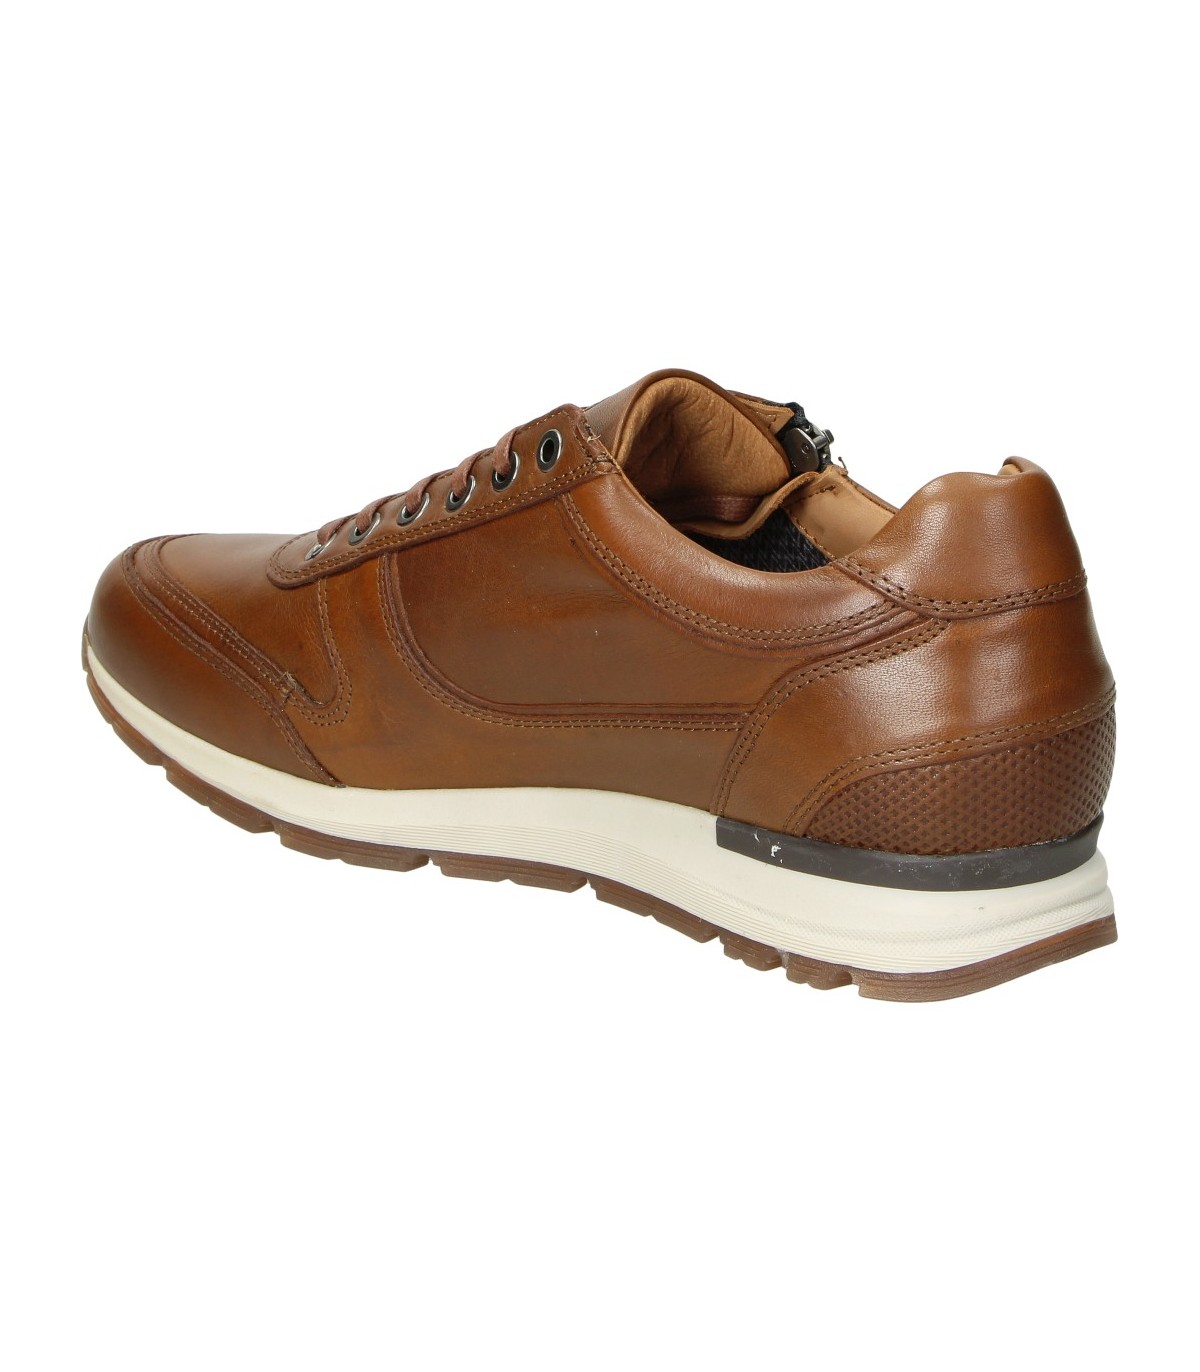 Zapatos marrones para hombre KANGAROOS 472-13 online en MEGACALZADO